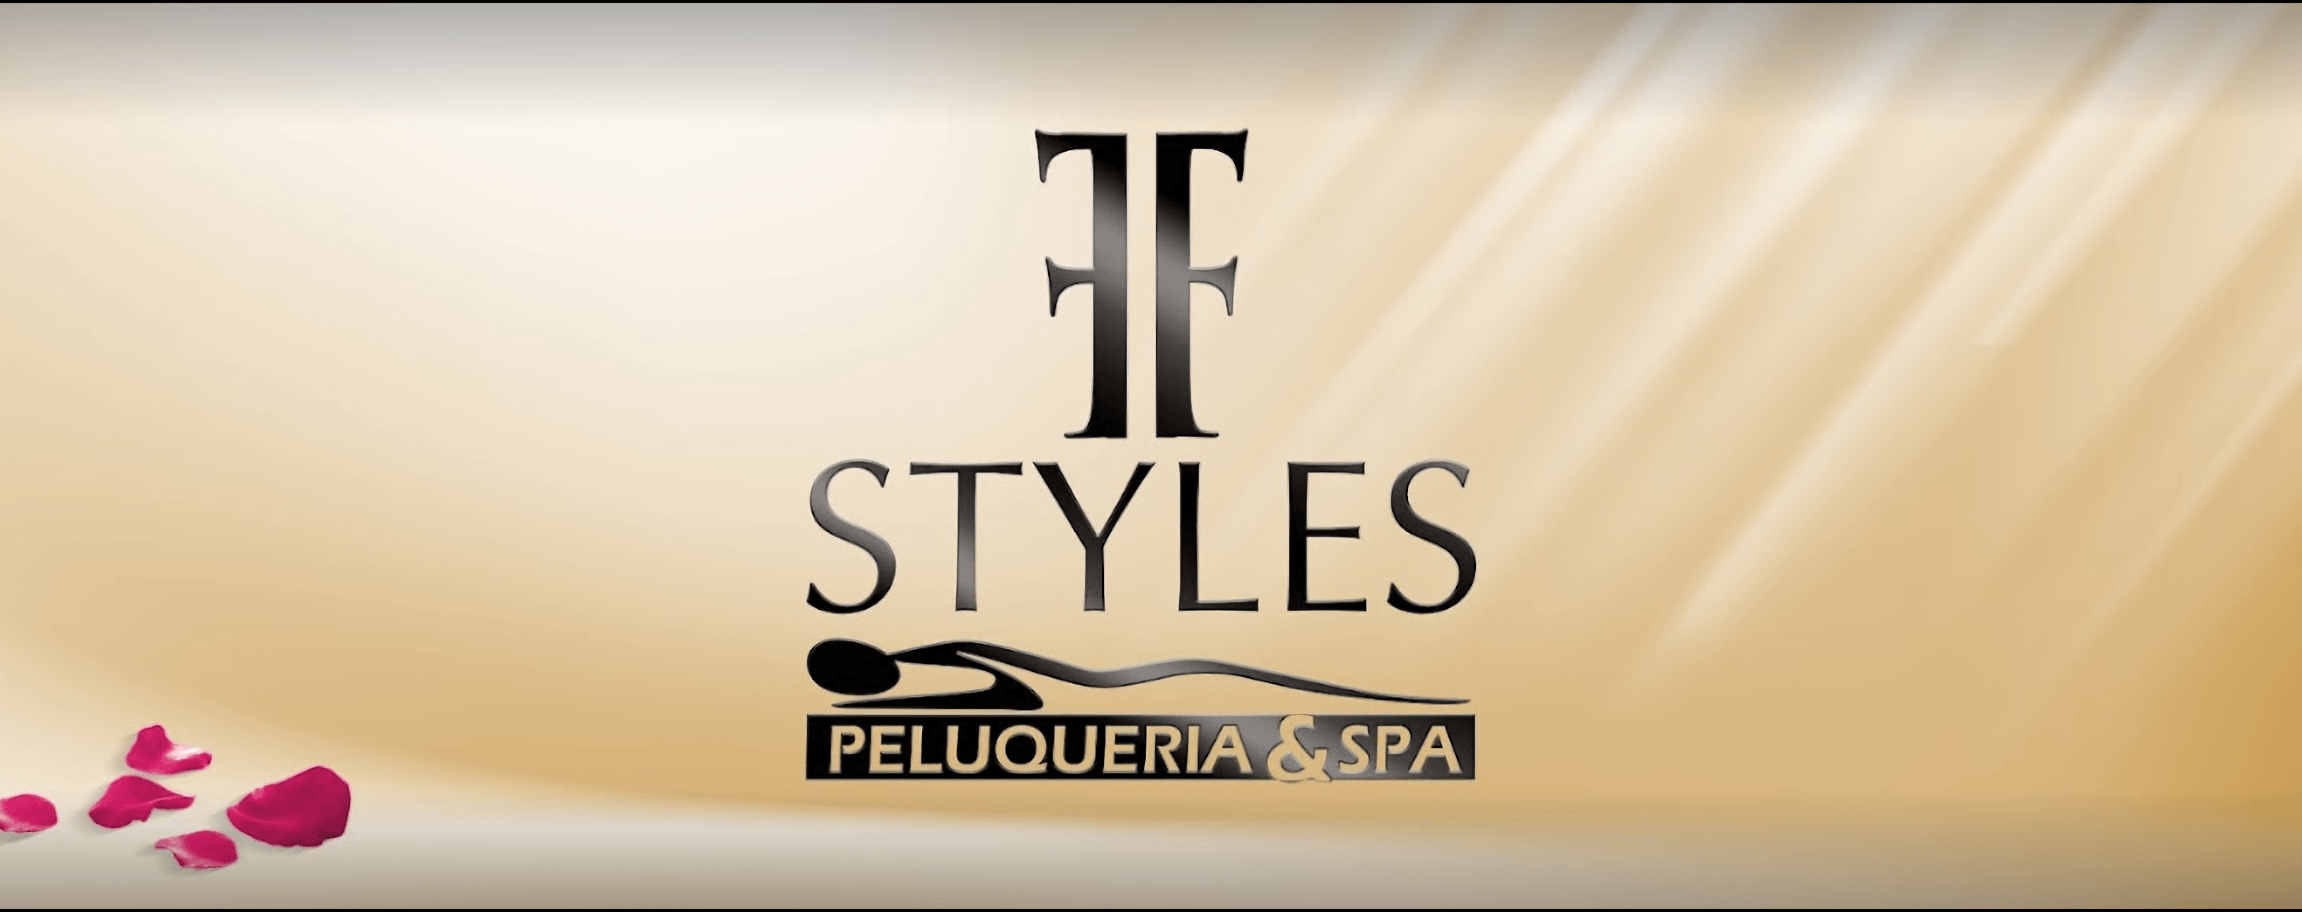 Salón de Belleza-ff-styles-pelqueria-y-spa-6816